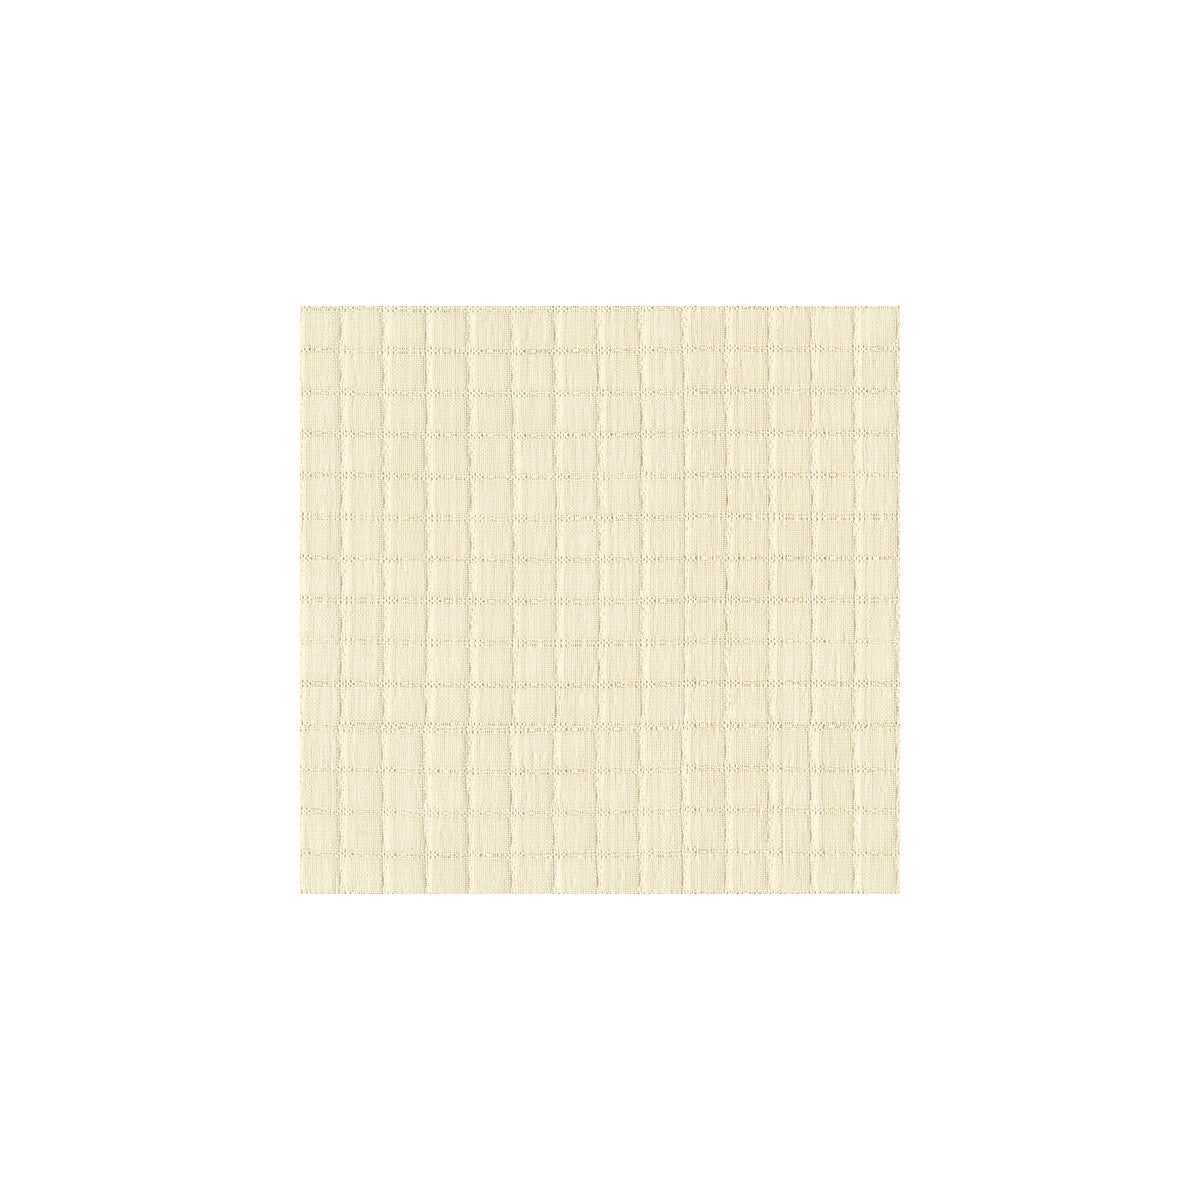 Kravet Basics fabric in 3747-111 color - pattern 3747.111.0 - by Kravet Basics